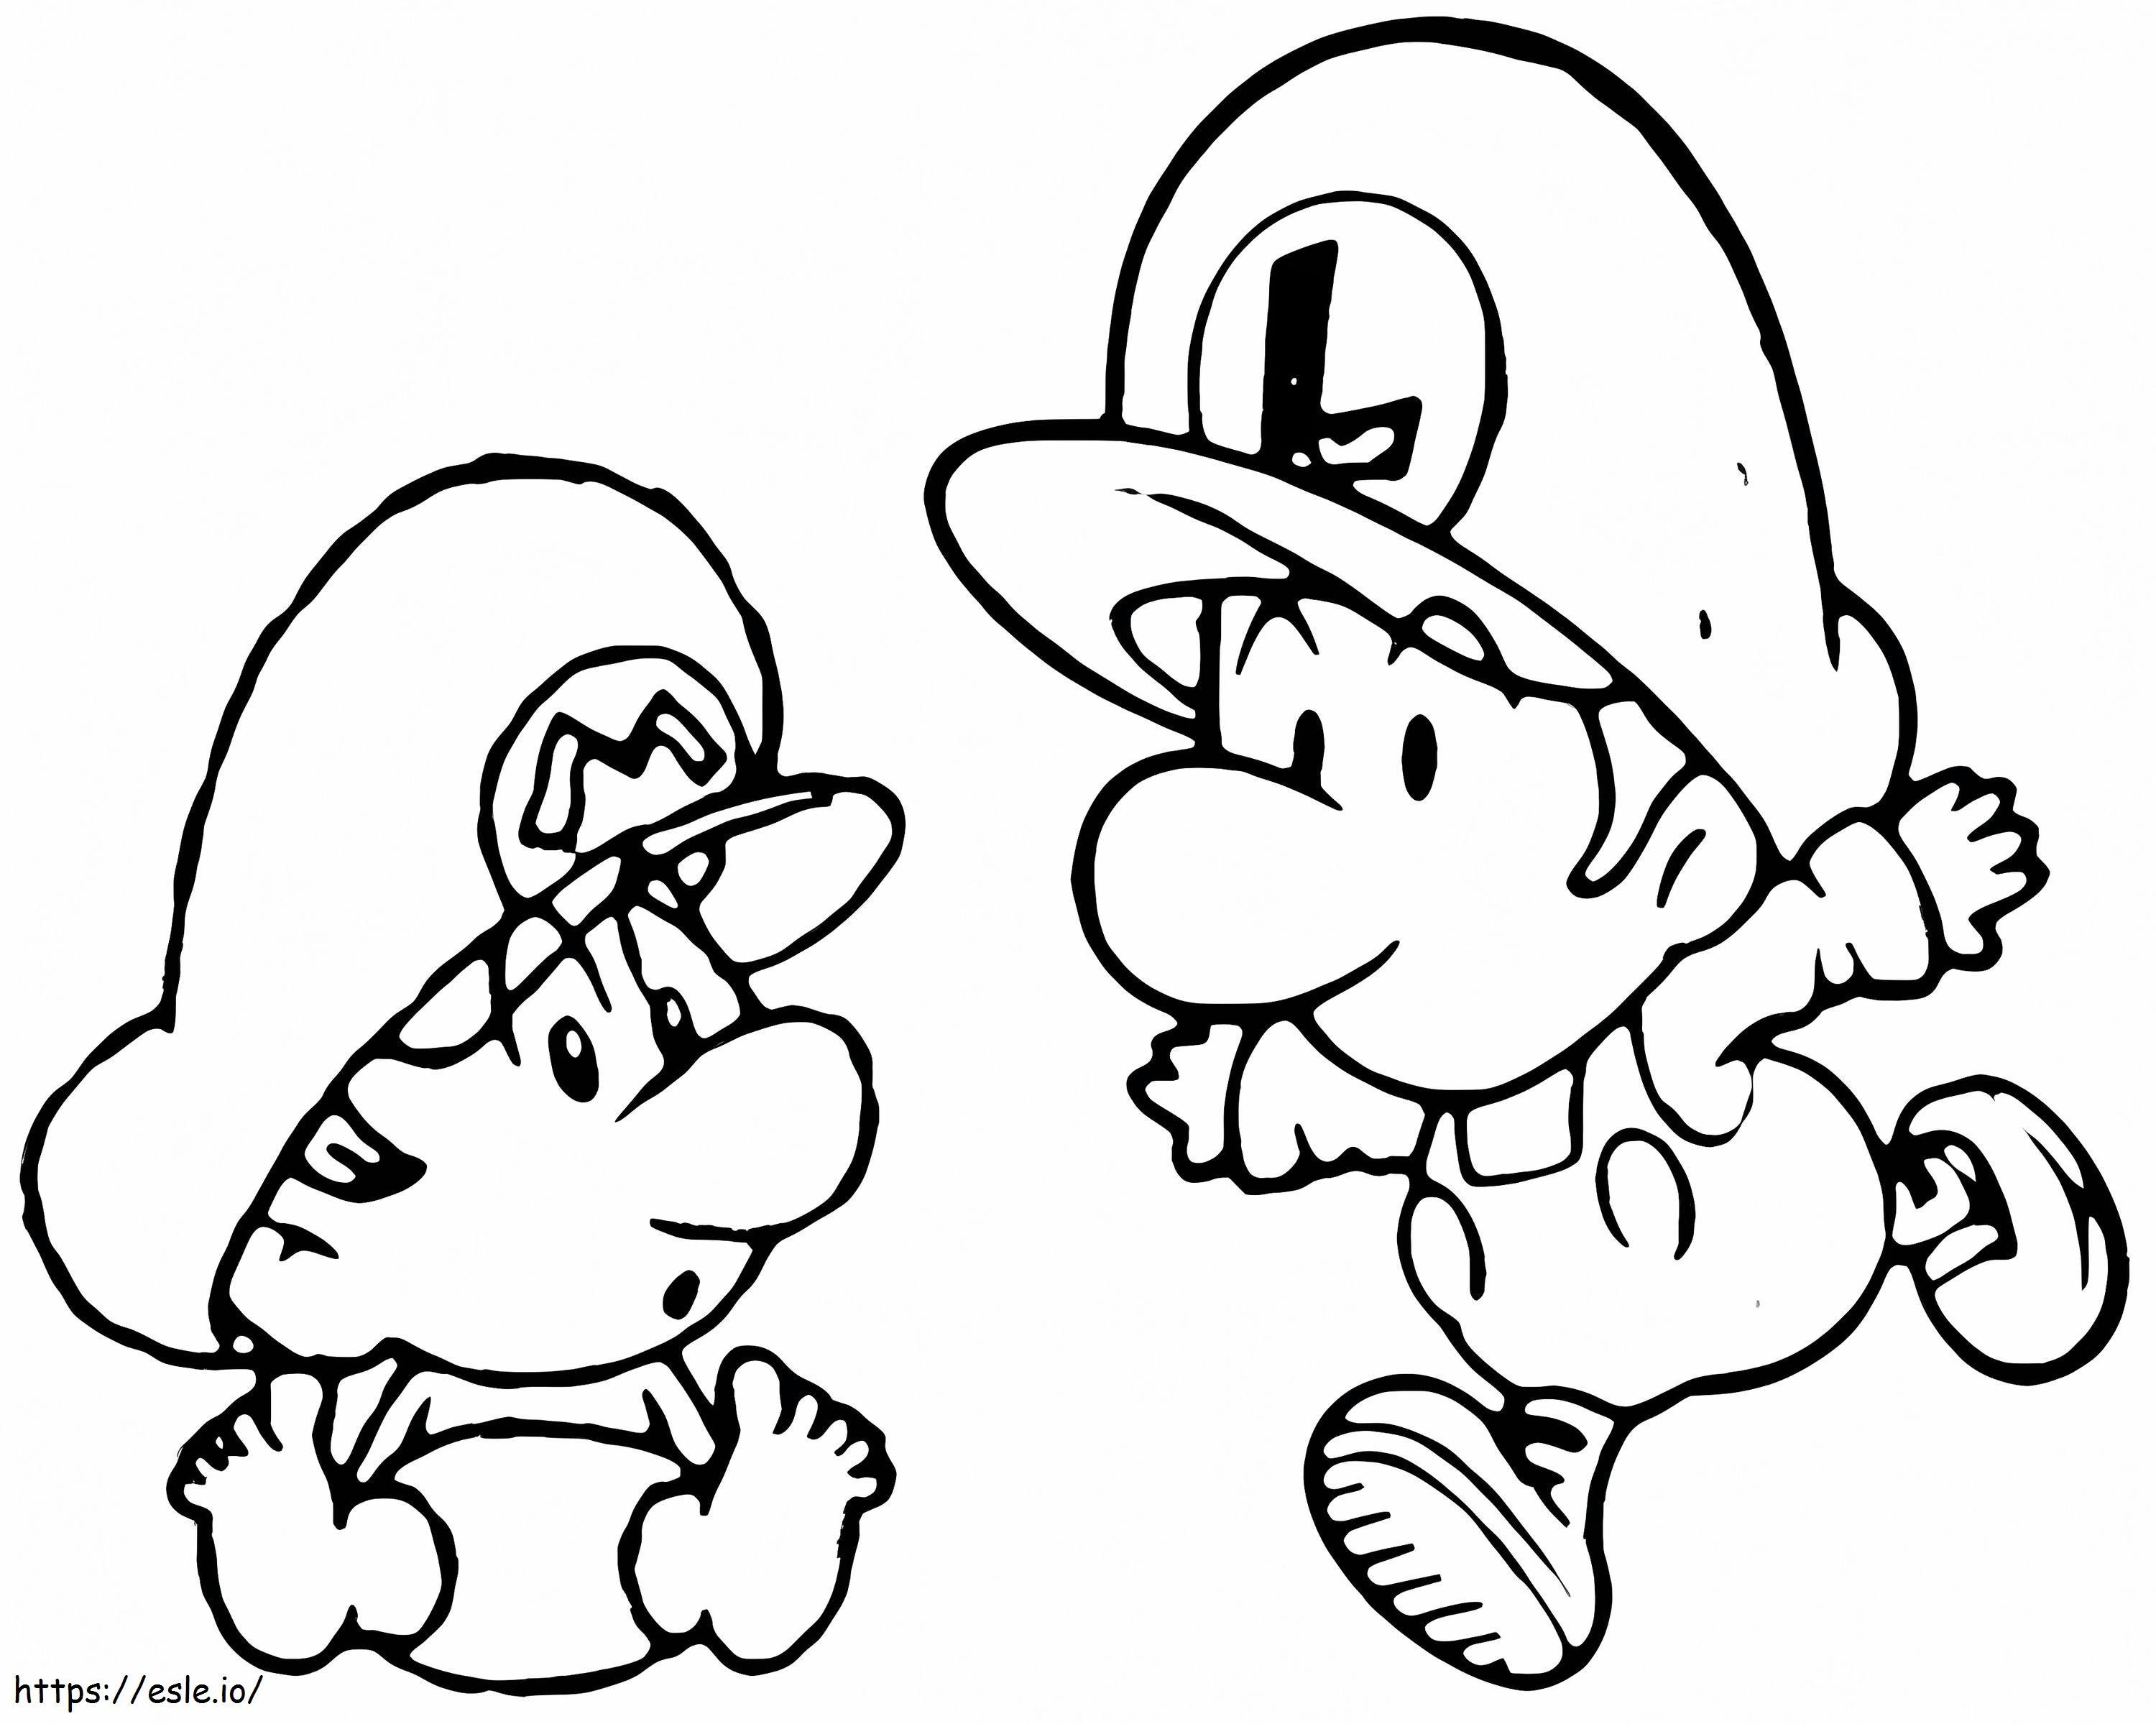 Baby Luigi și Baby Mario de colorat